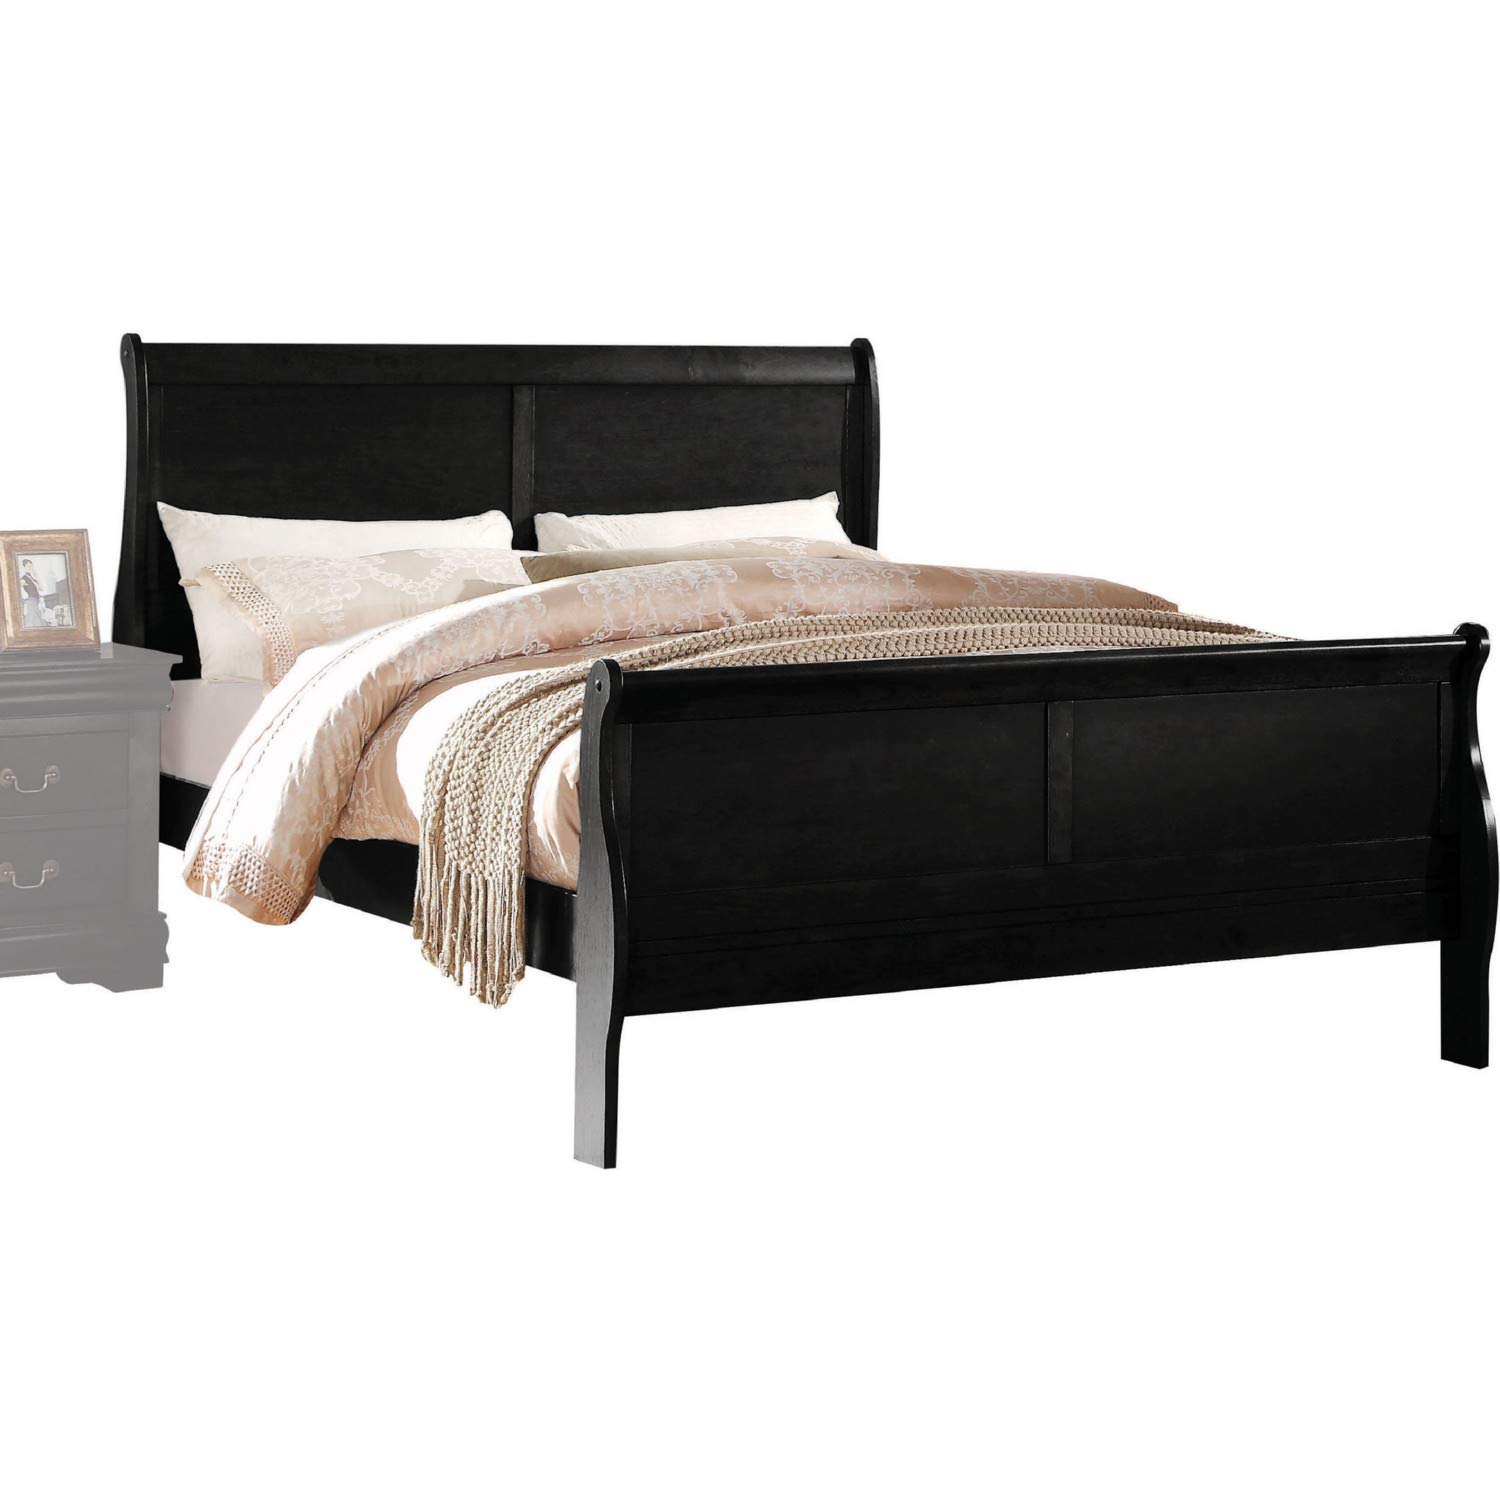 Benjara Transitional Panel Design Sleigh Eastern King Size Bed, Black